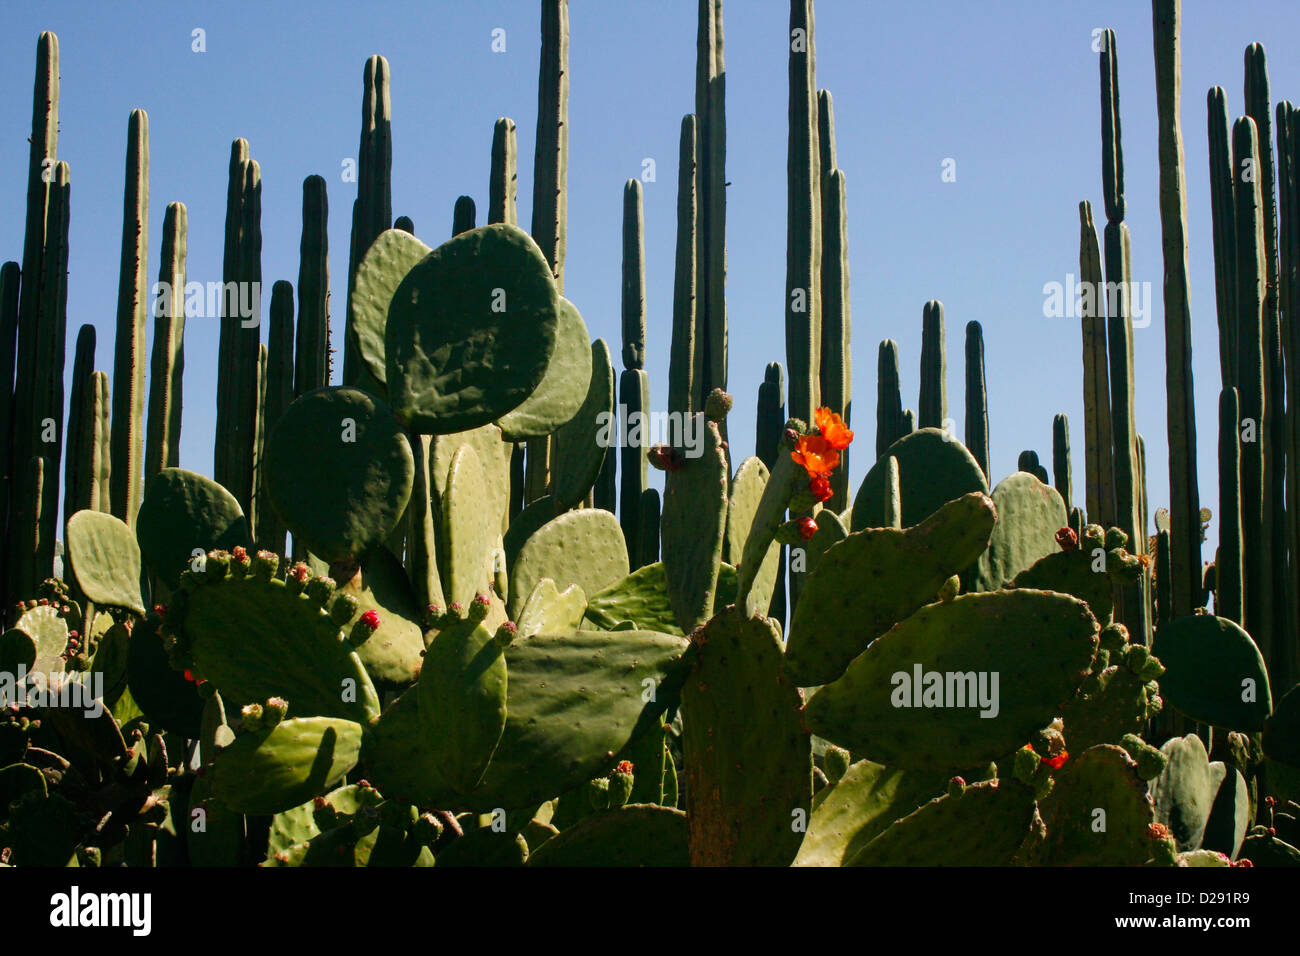 Mexico, Oaxaca Botanical Garden, Cactus Stock Photo